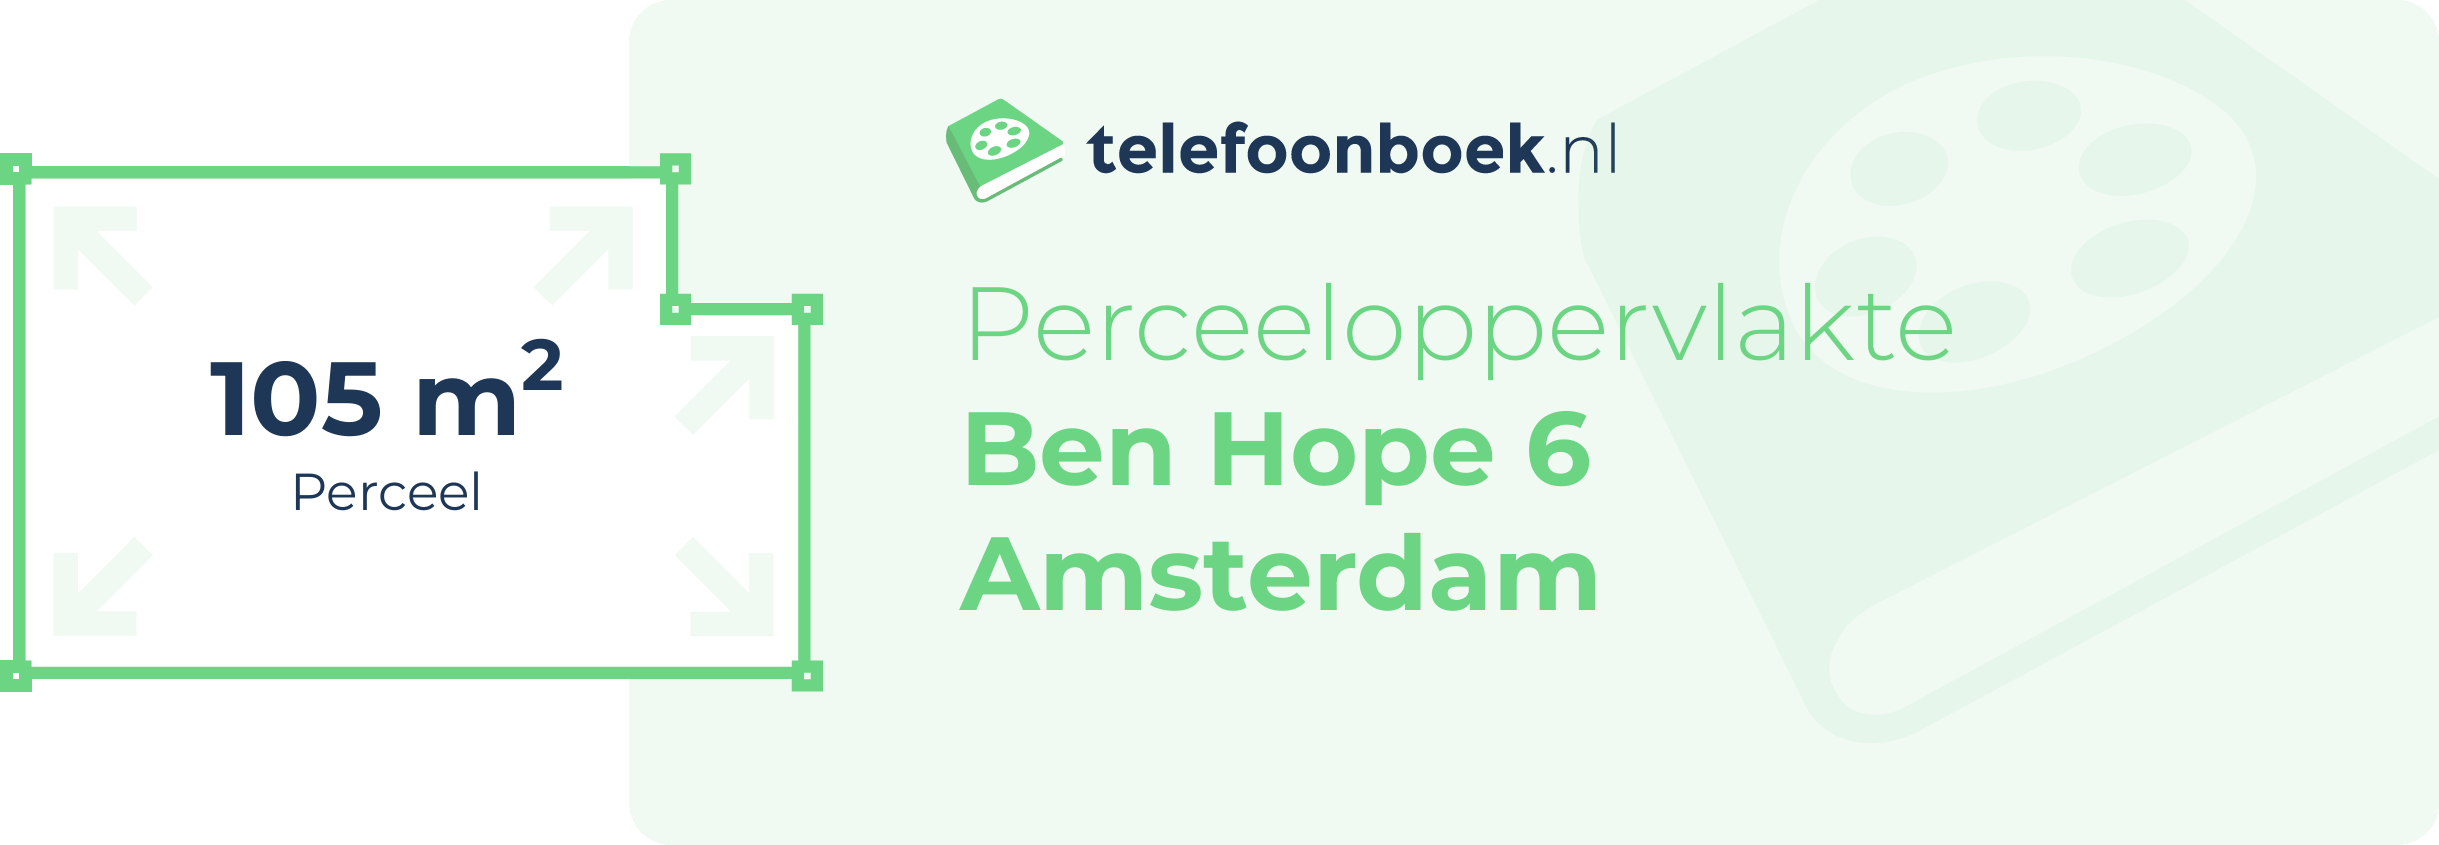 Perceeloppervlakte Ben Hope 6 Amsterdam